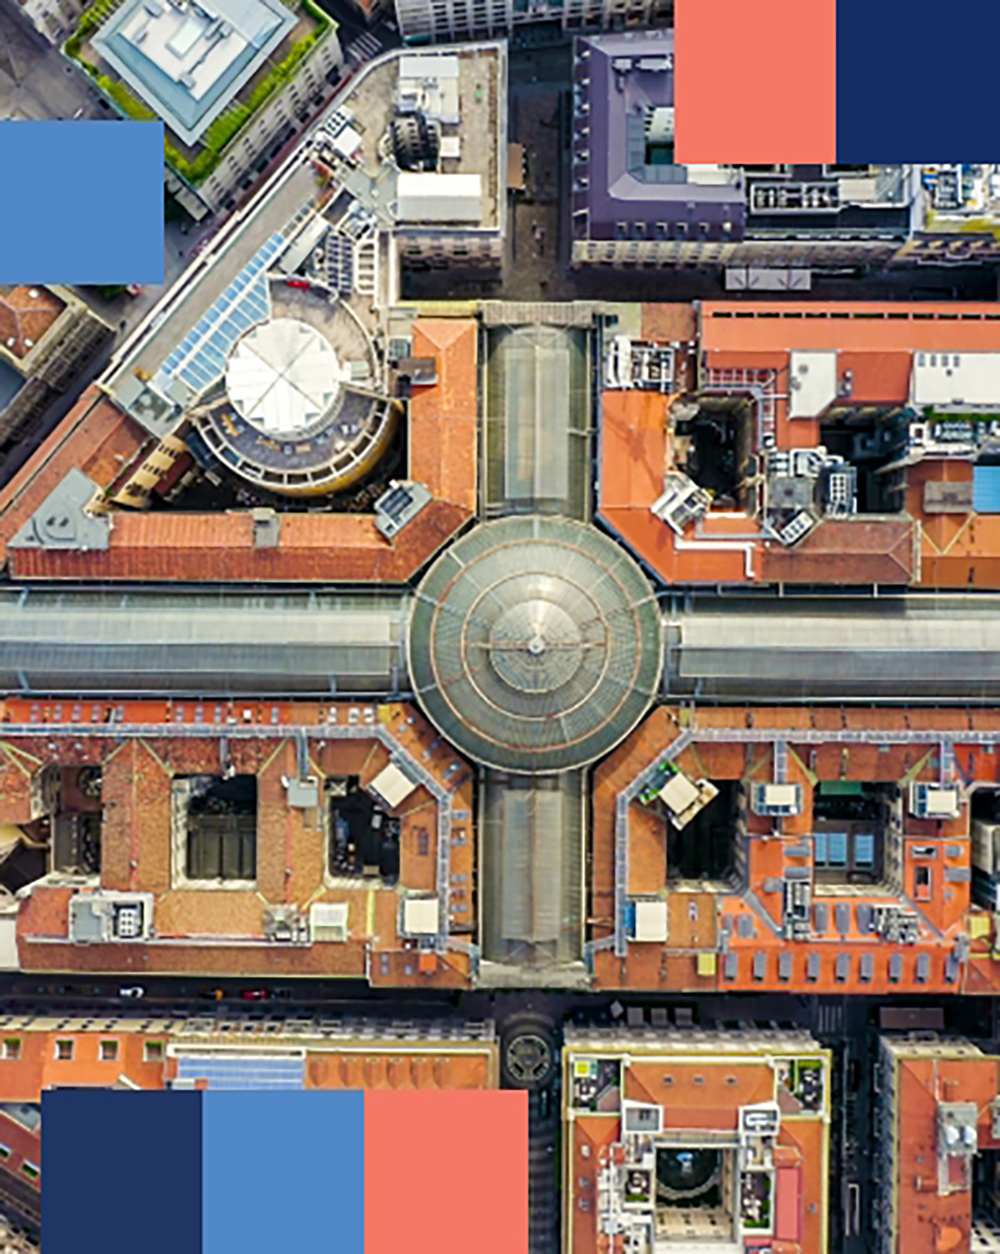 Galleria Vittorio Emanuele II em Milão vista de cima - mobile